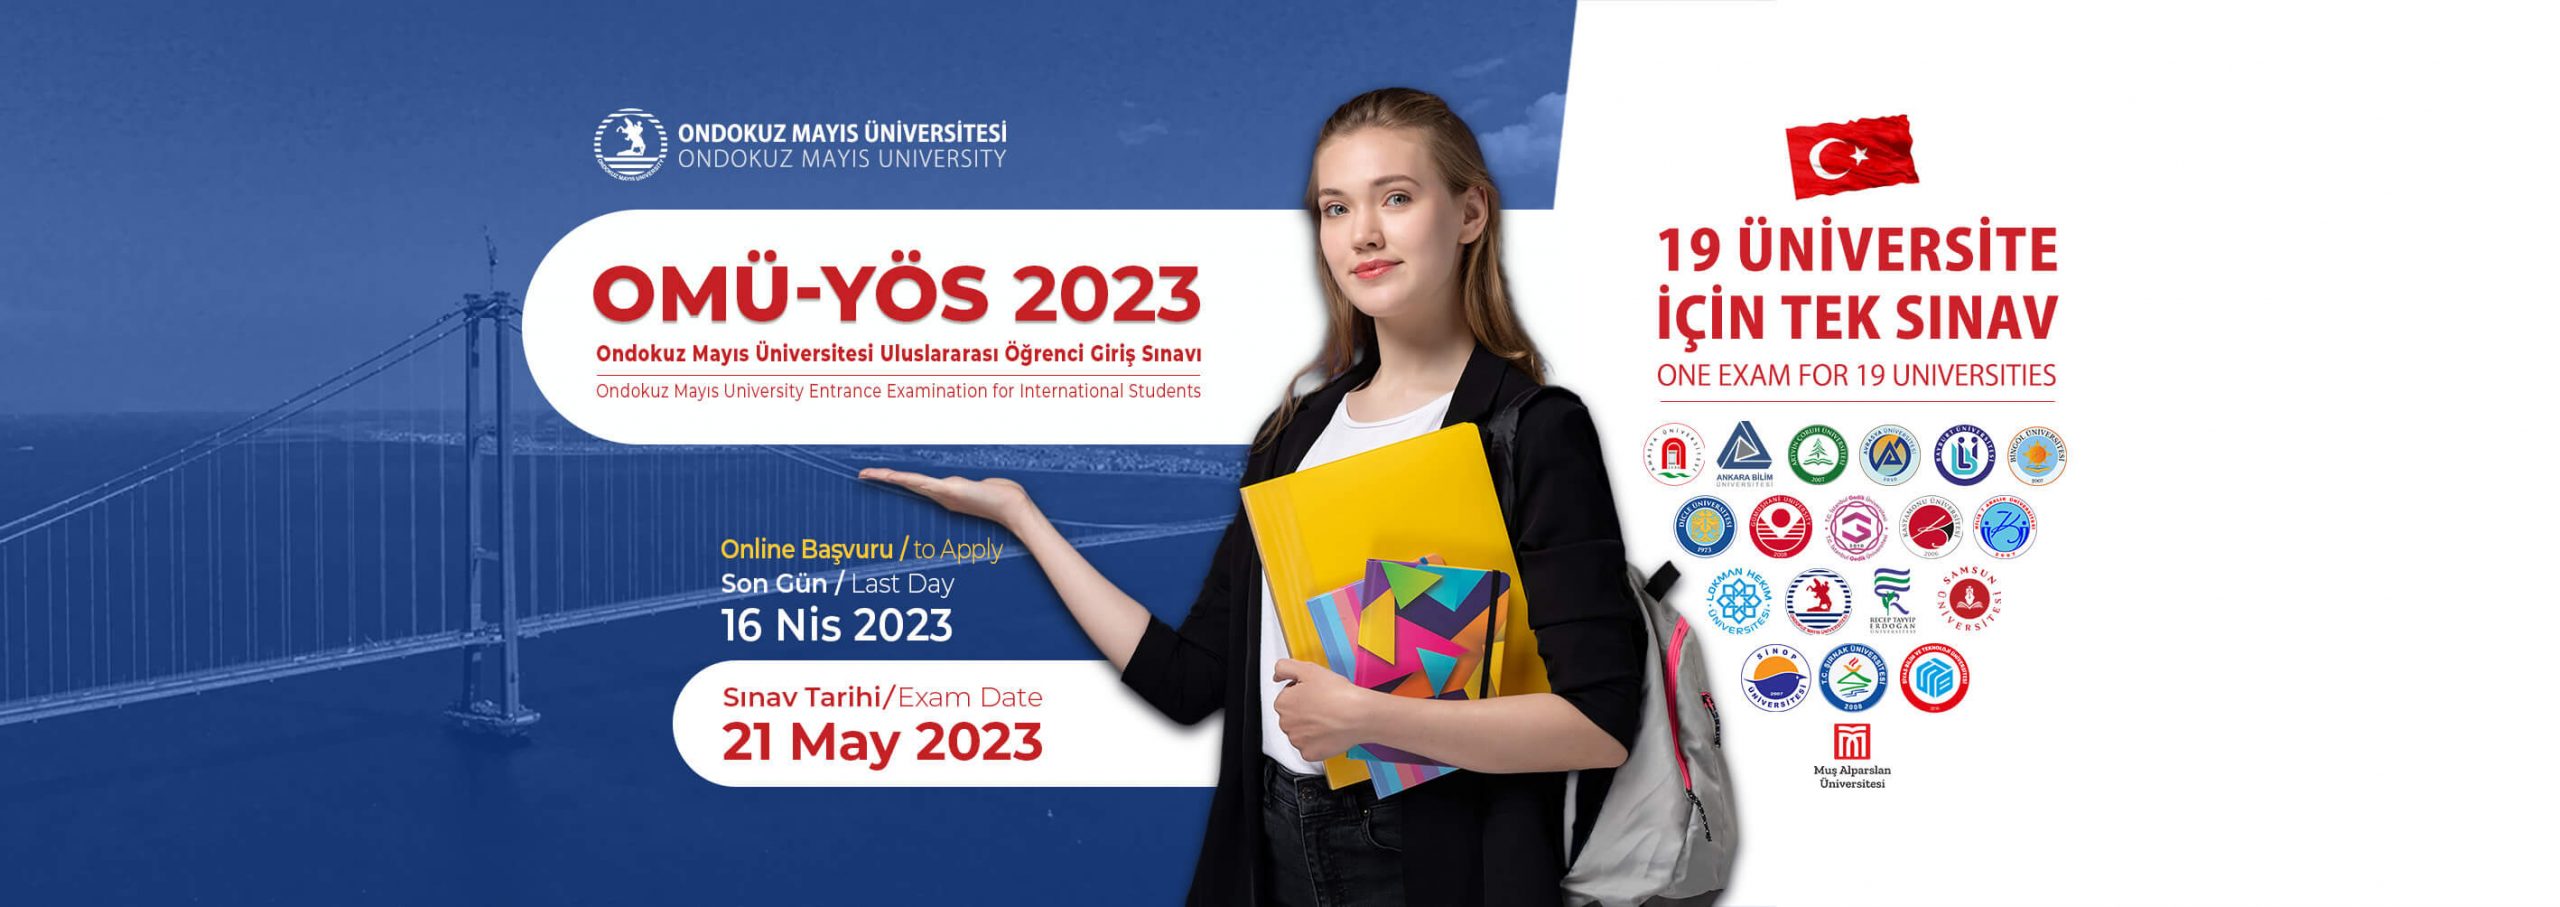 OMÜ-YÖS 2023 - Uluslararası Öğrenci Giriş Sınavı